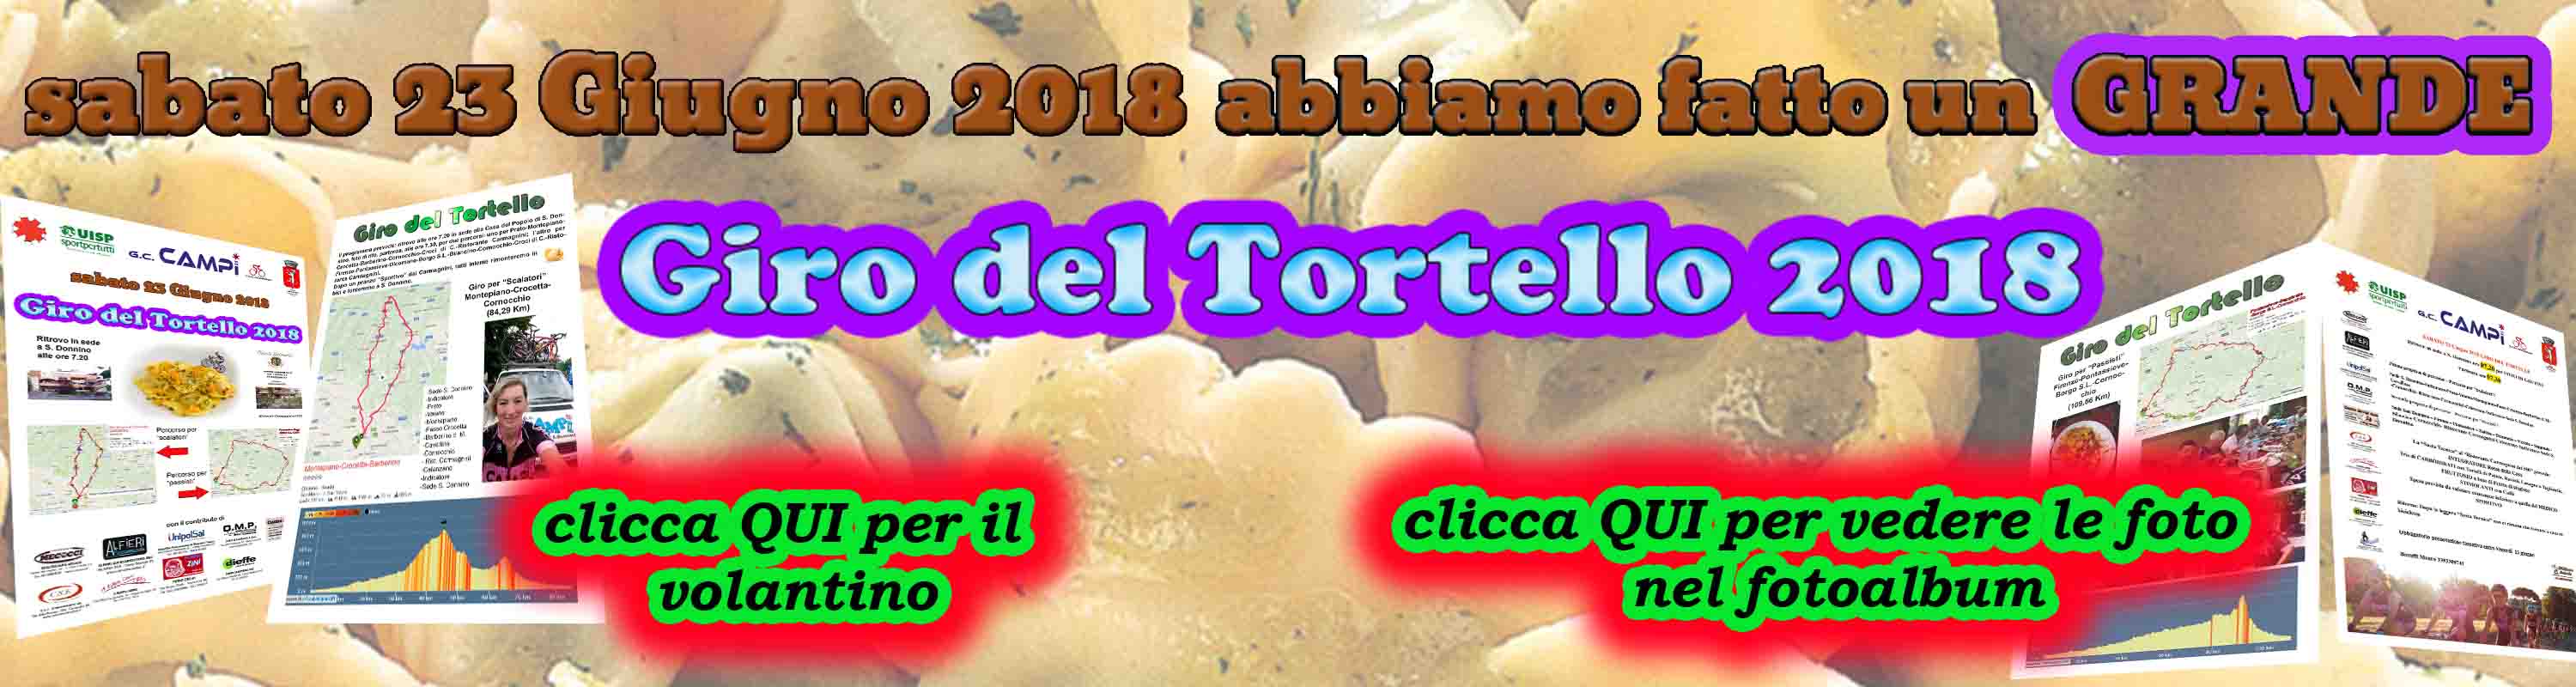 180623_Banner_Giro_del_Tortello_2018